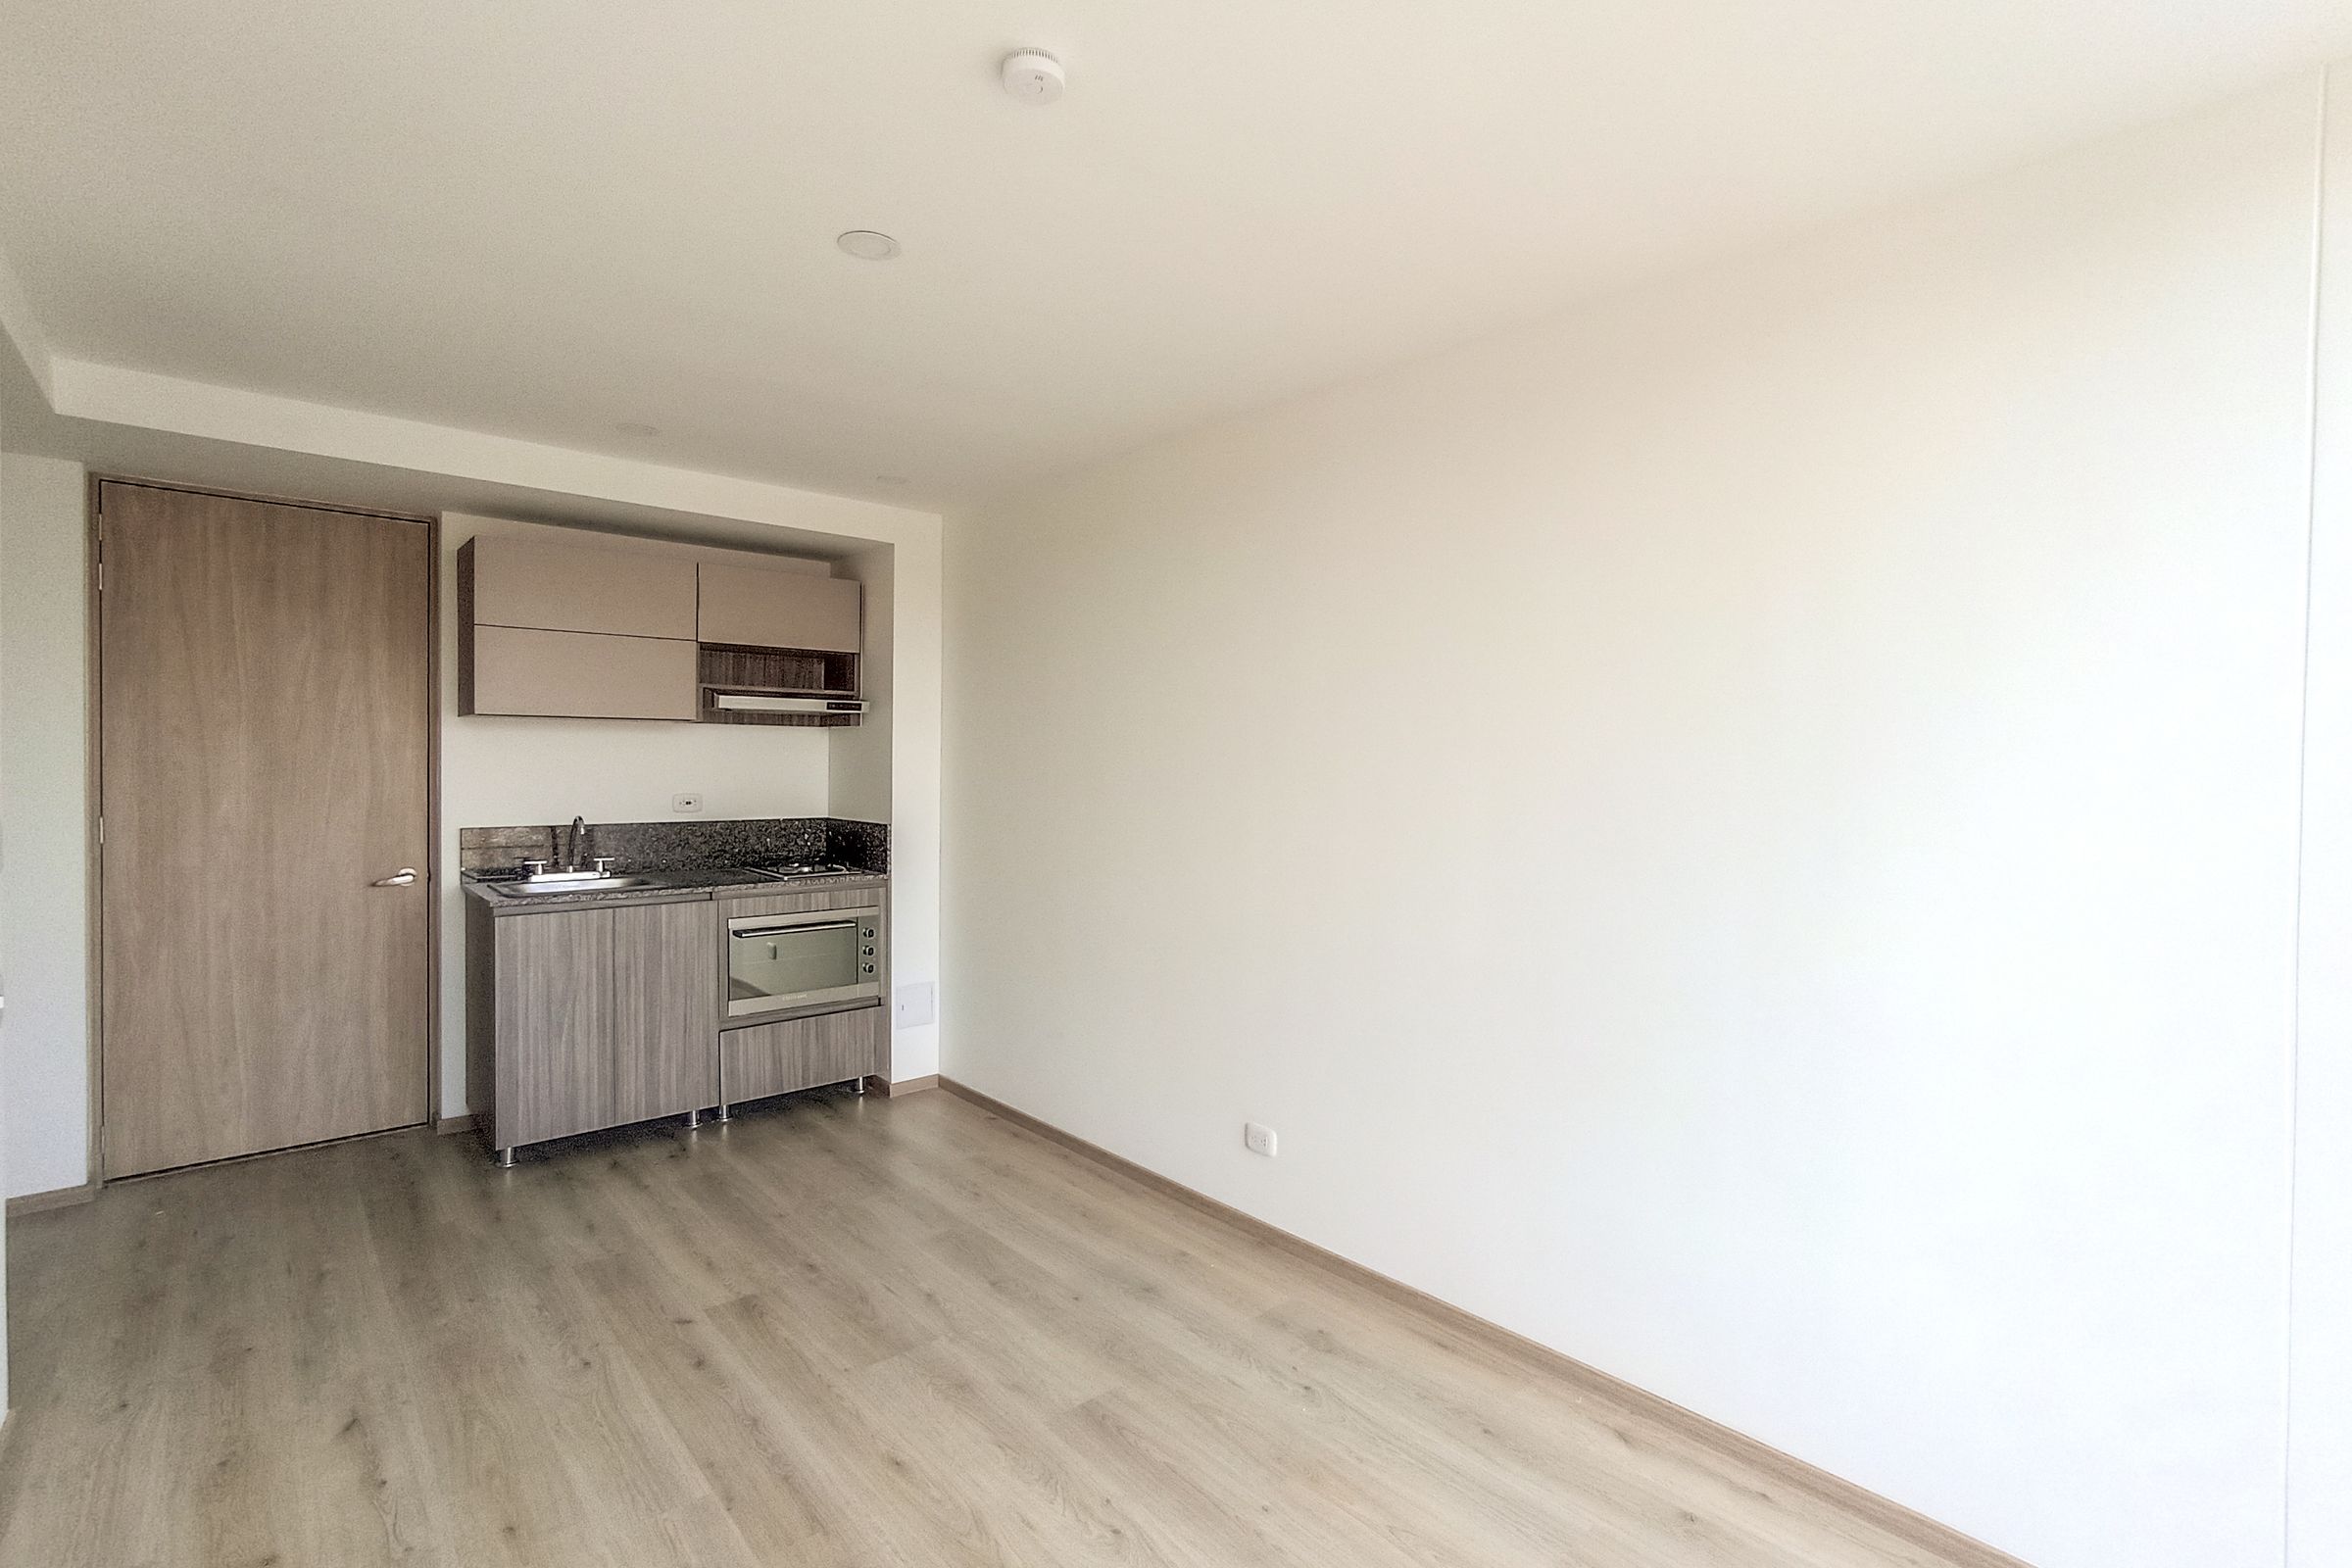 Apartamento en arriendo Nueva Zelandia 32 m² - $ 1.300.000,00